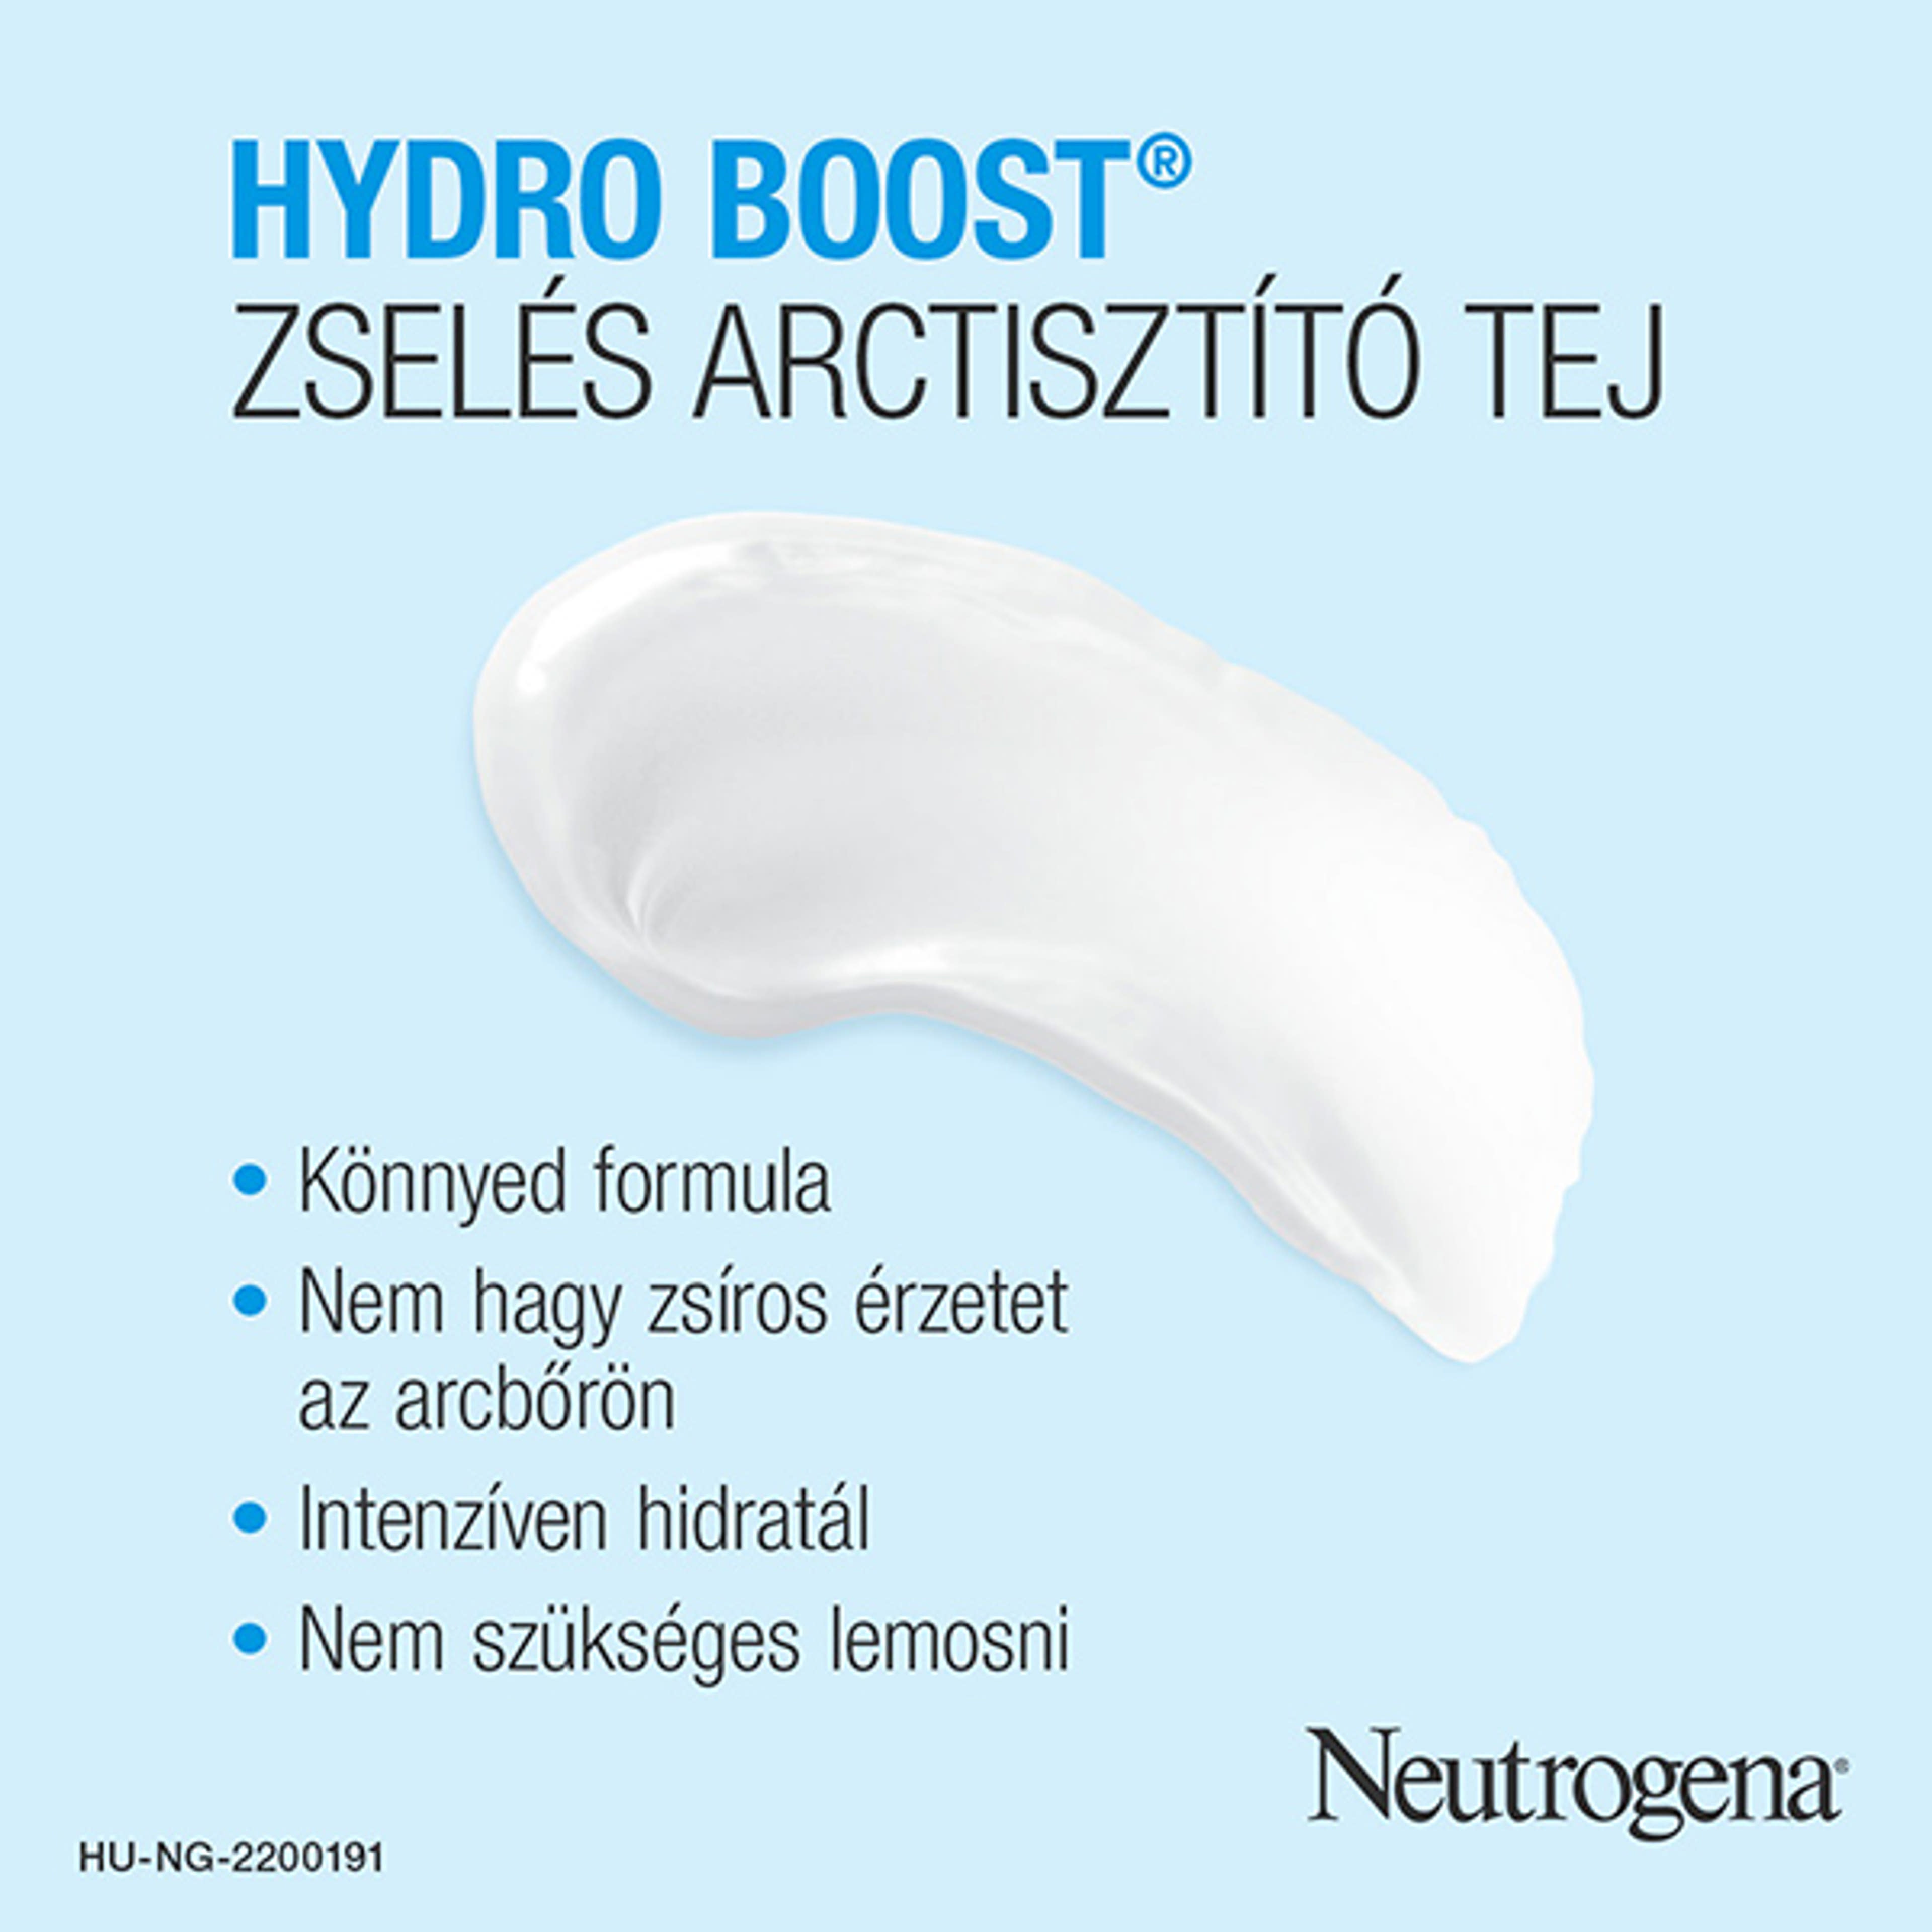 Neutrogena hydro boost artisztító zselés tej - 200 ml-3